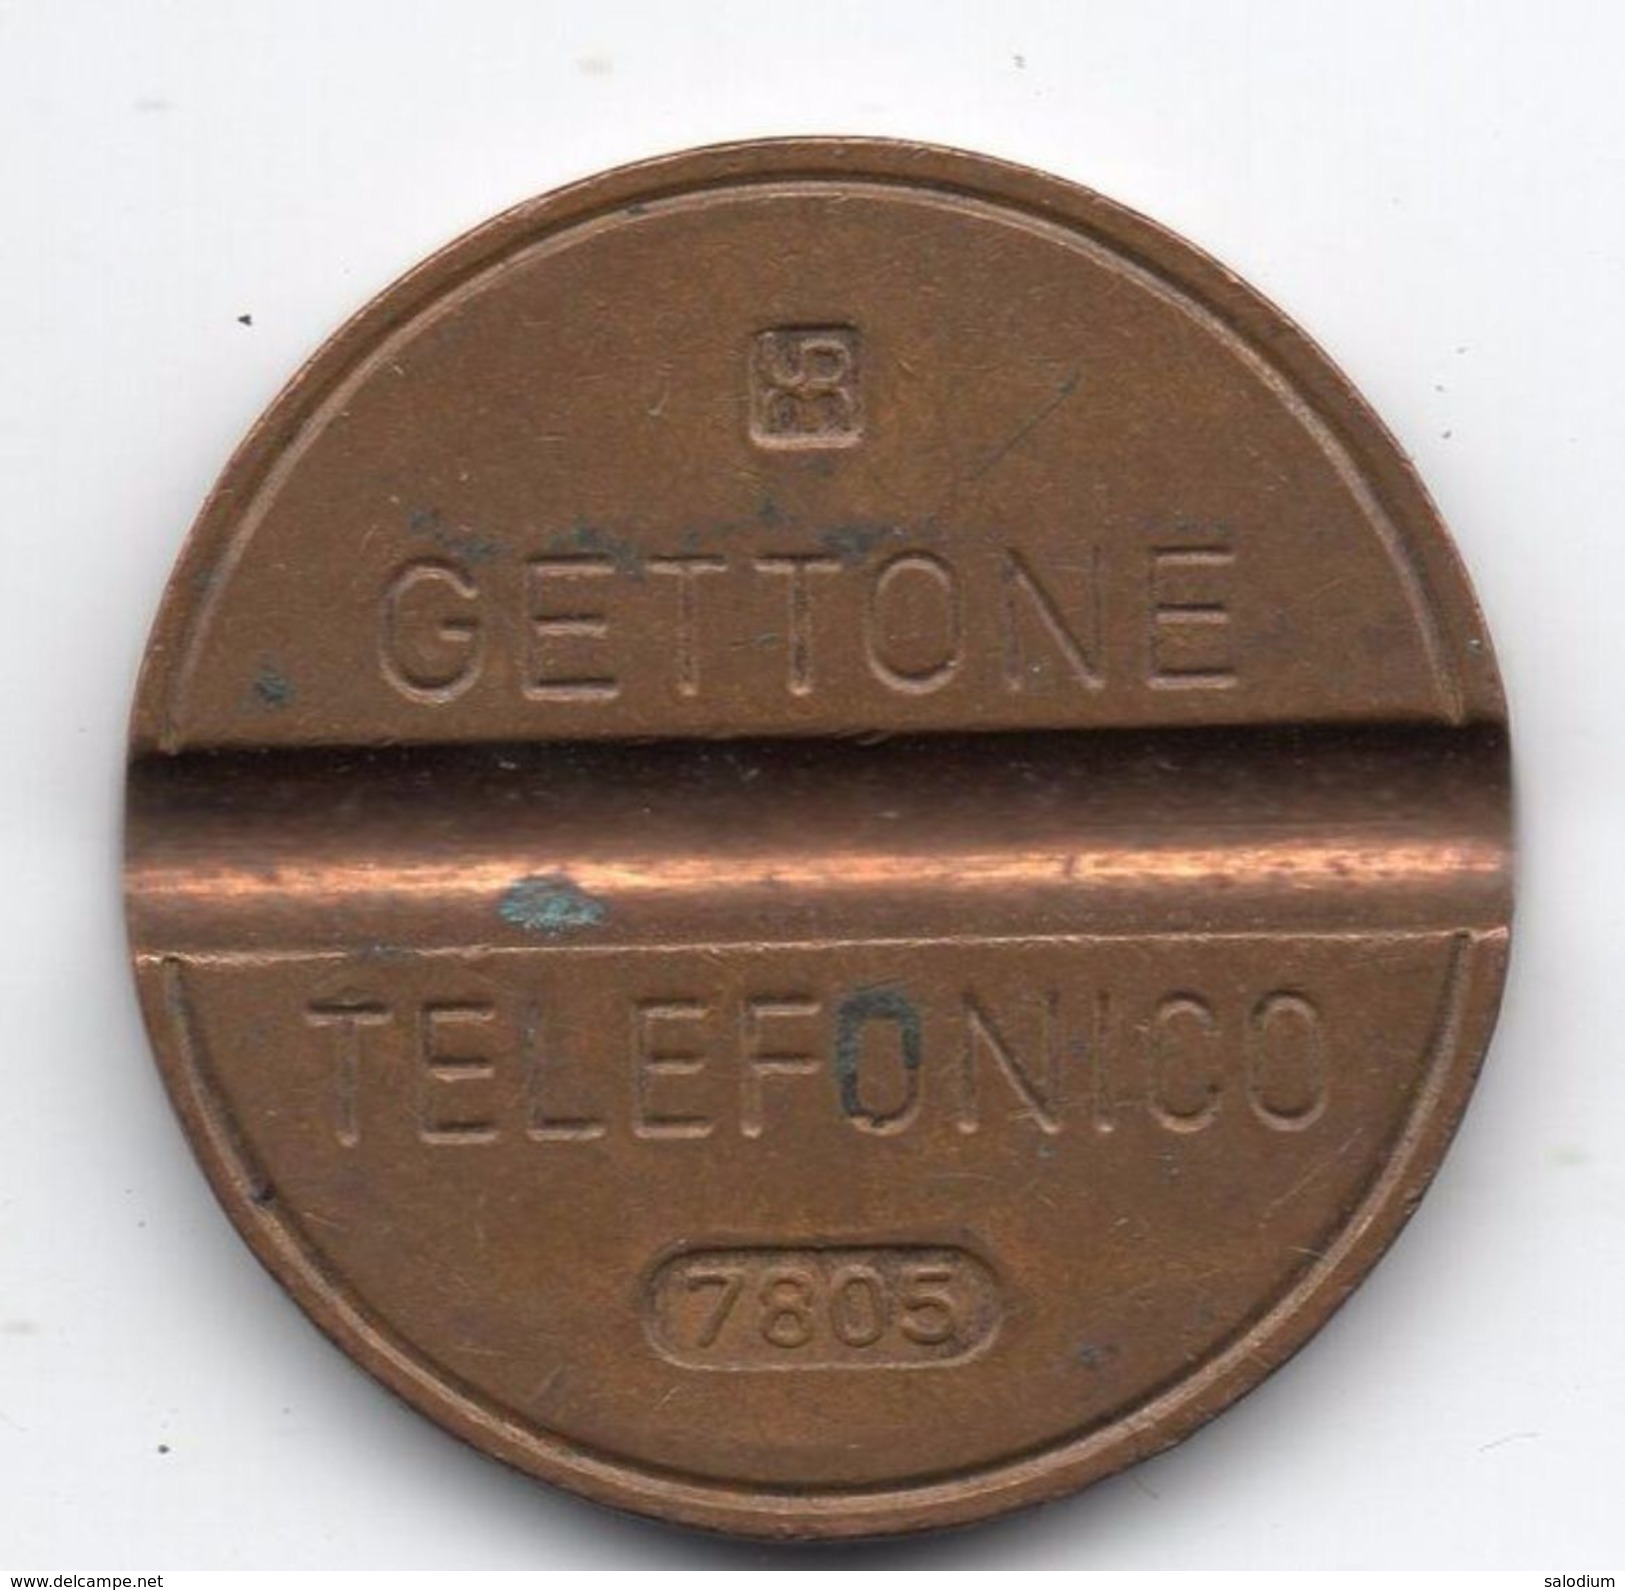 Gettone Telefonico 7805 Token Telephone - (Id-859) - Professionnels/De Société